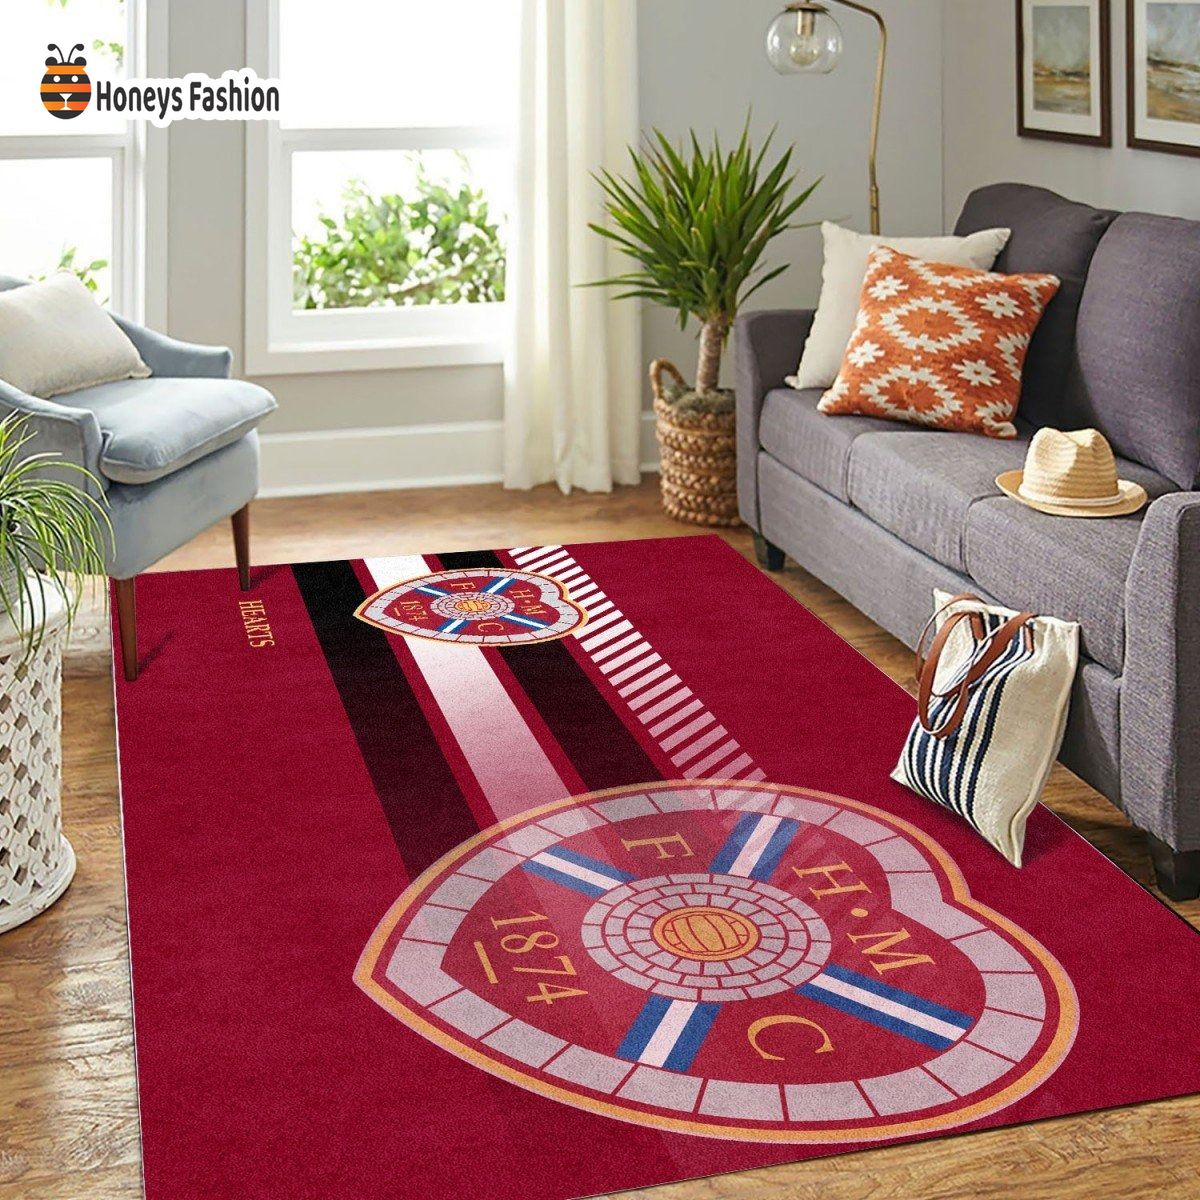 Heart of Midlothian F.C Rug Carpet